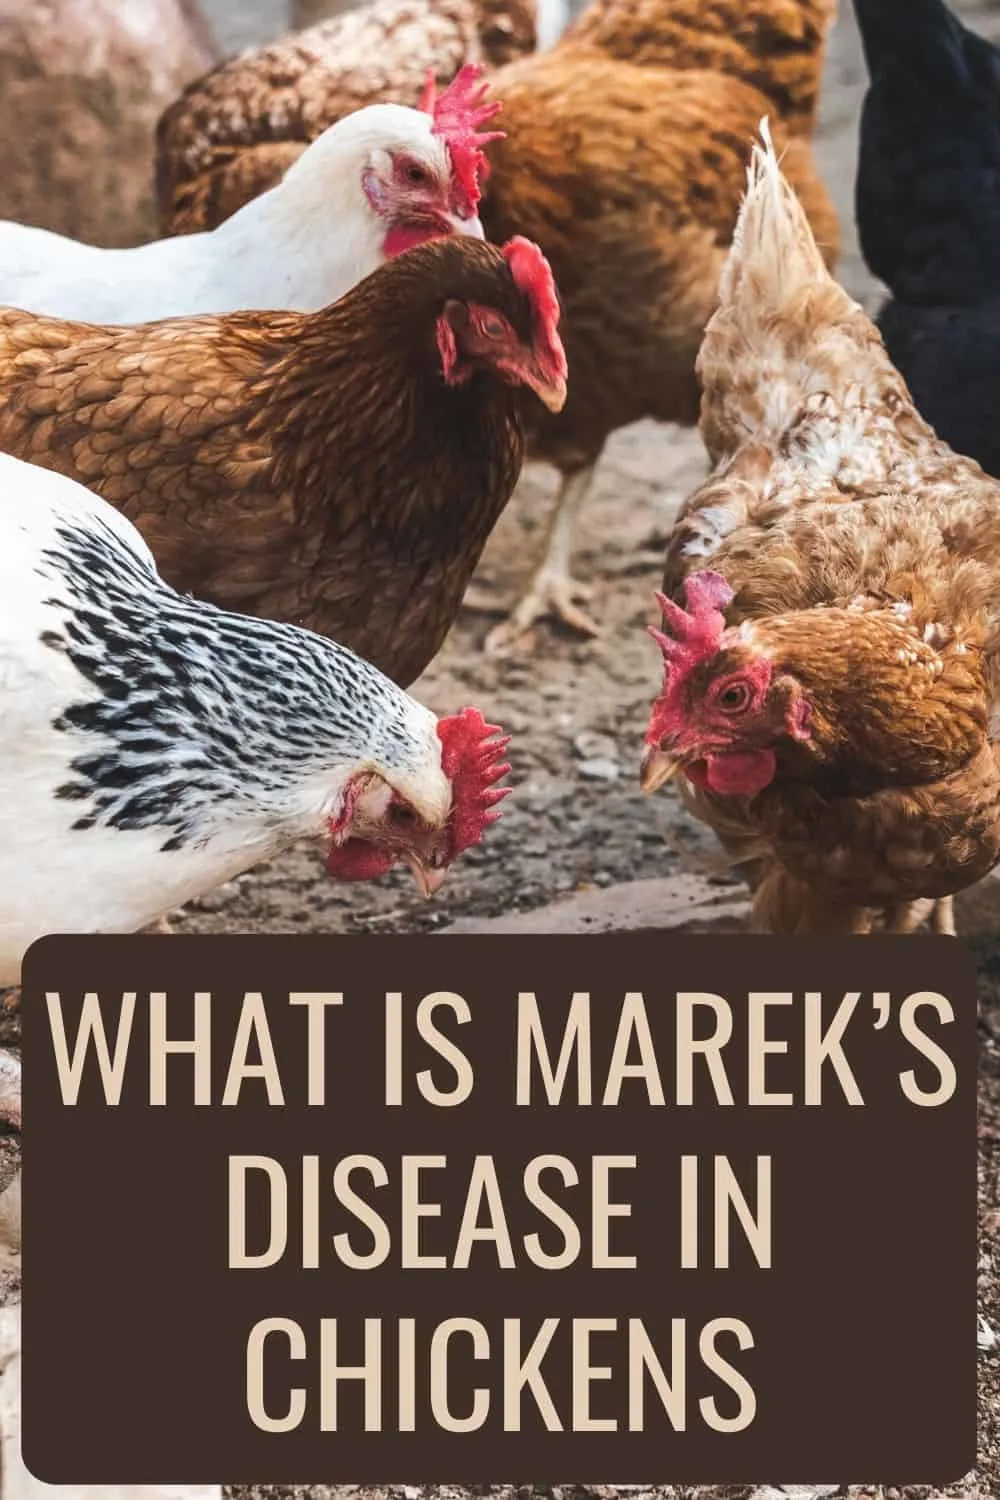 What Is Marek’s Disease In Chickens